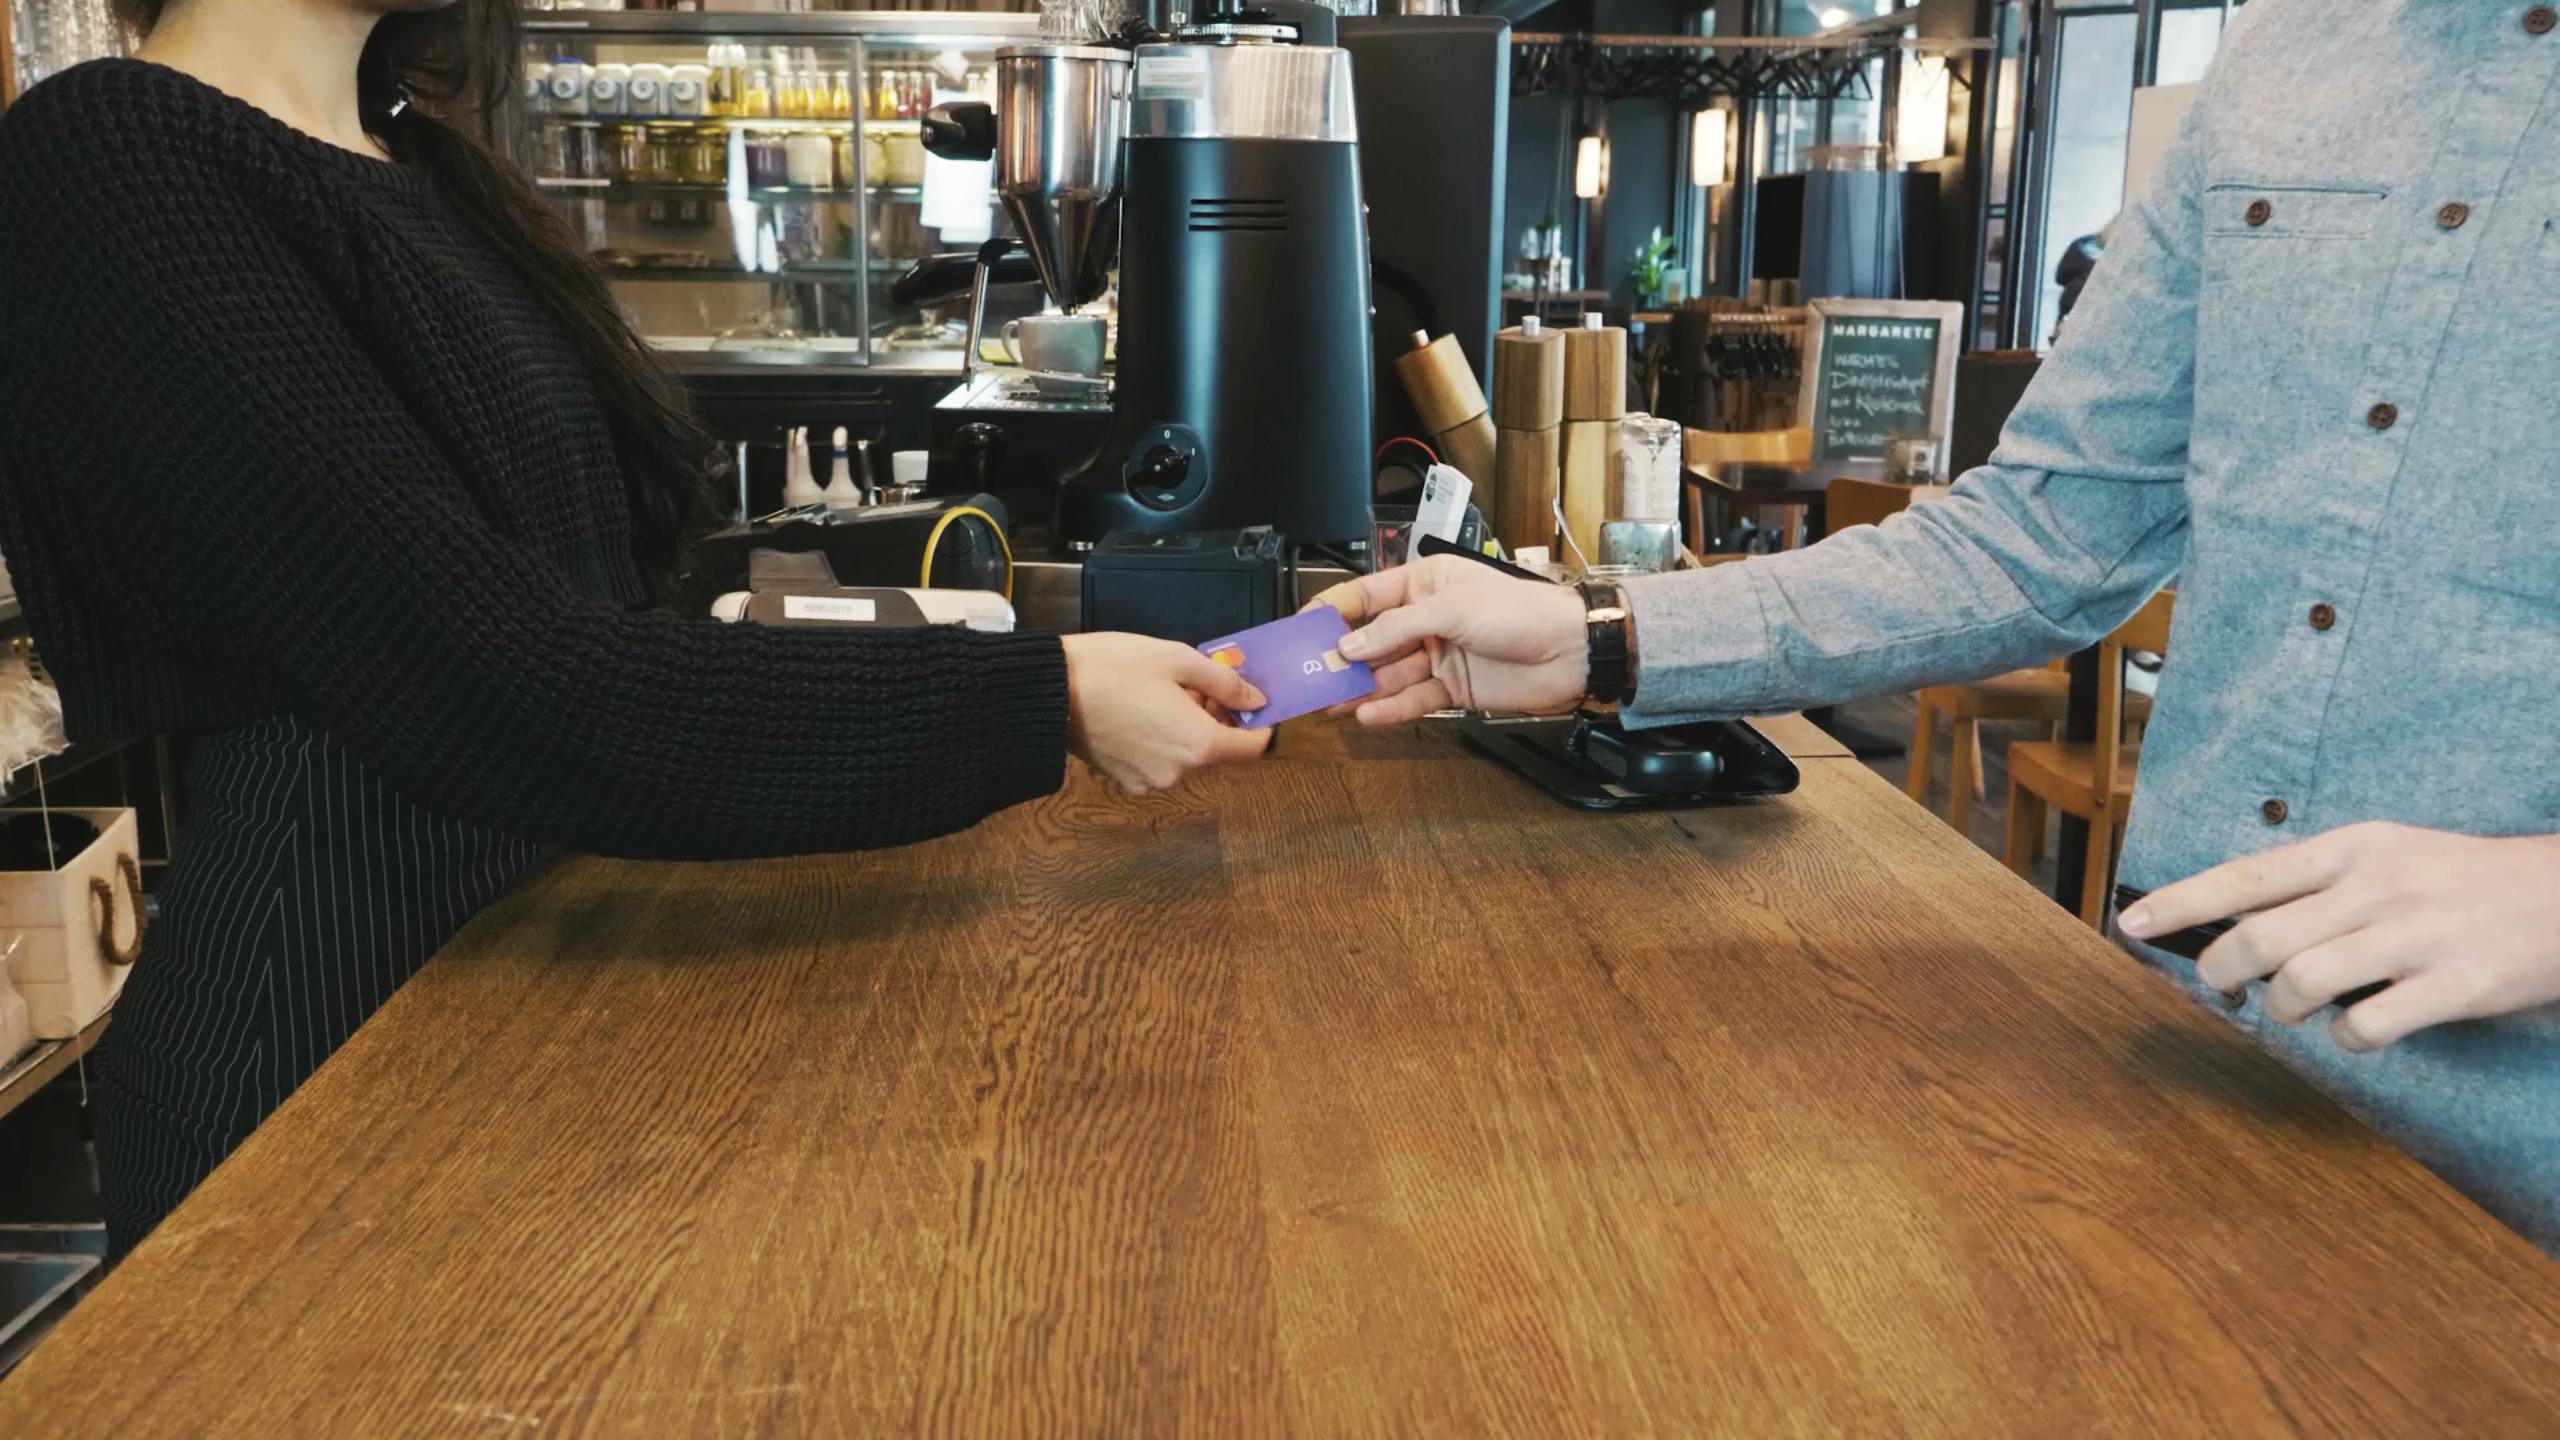 Kontist Kartenzahlung in einem Café